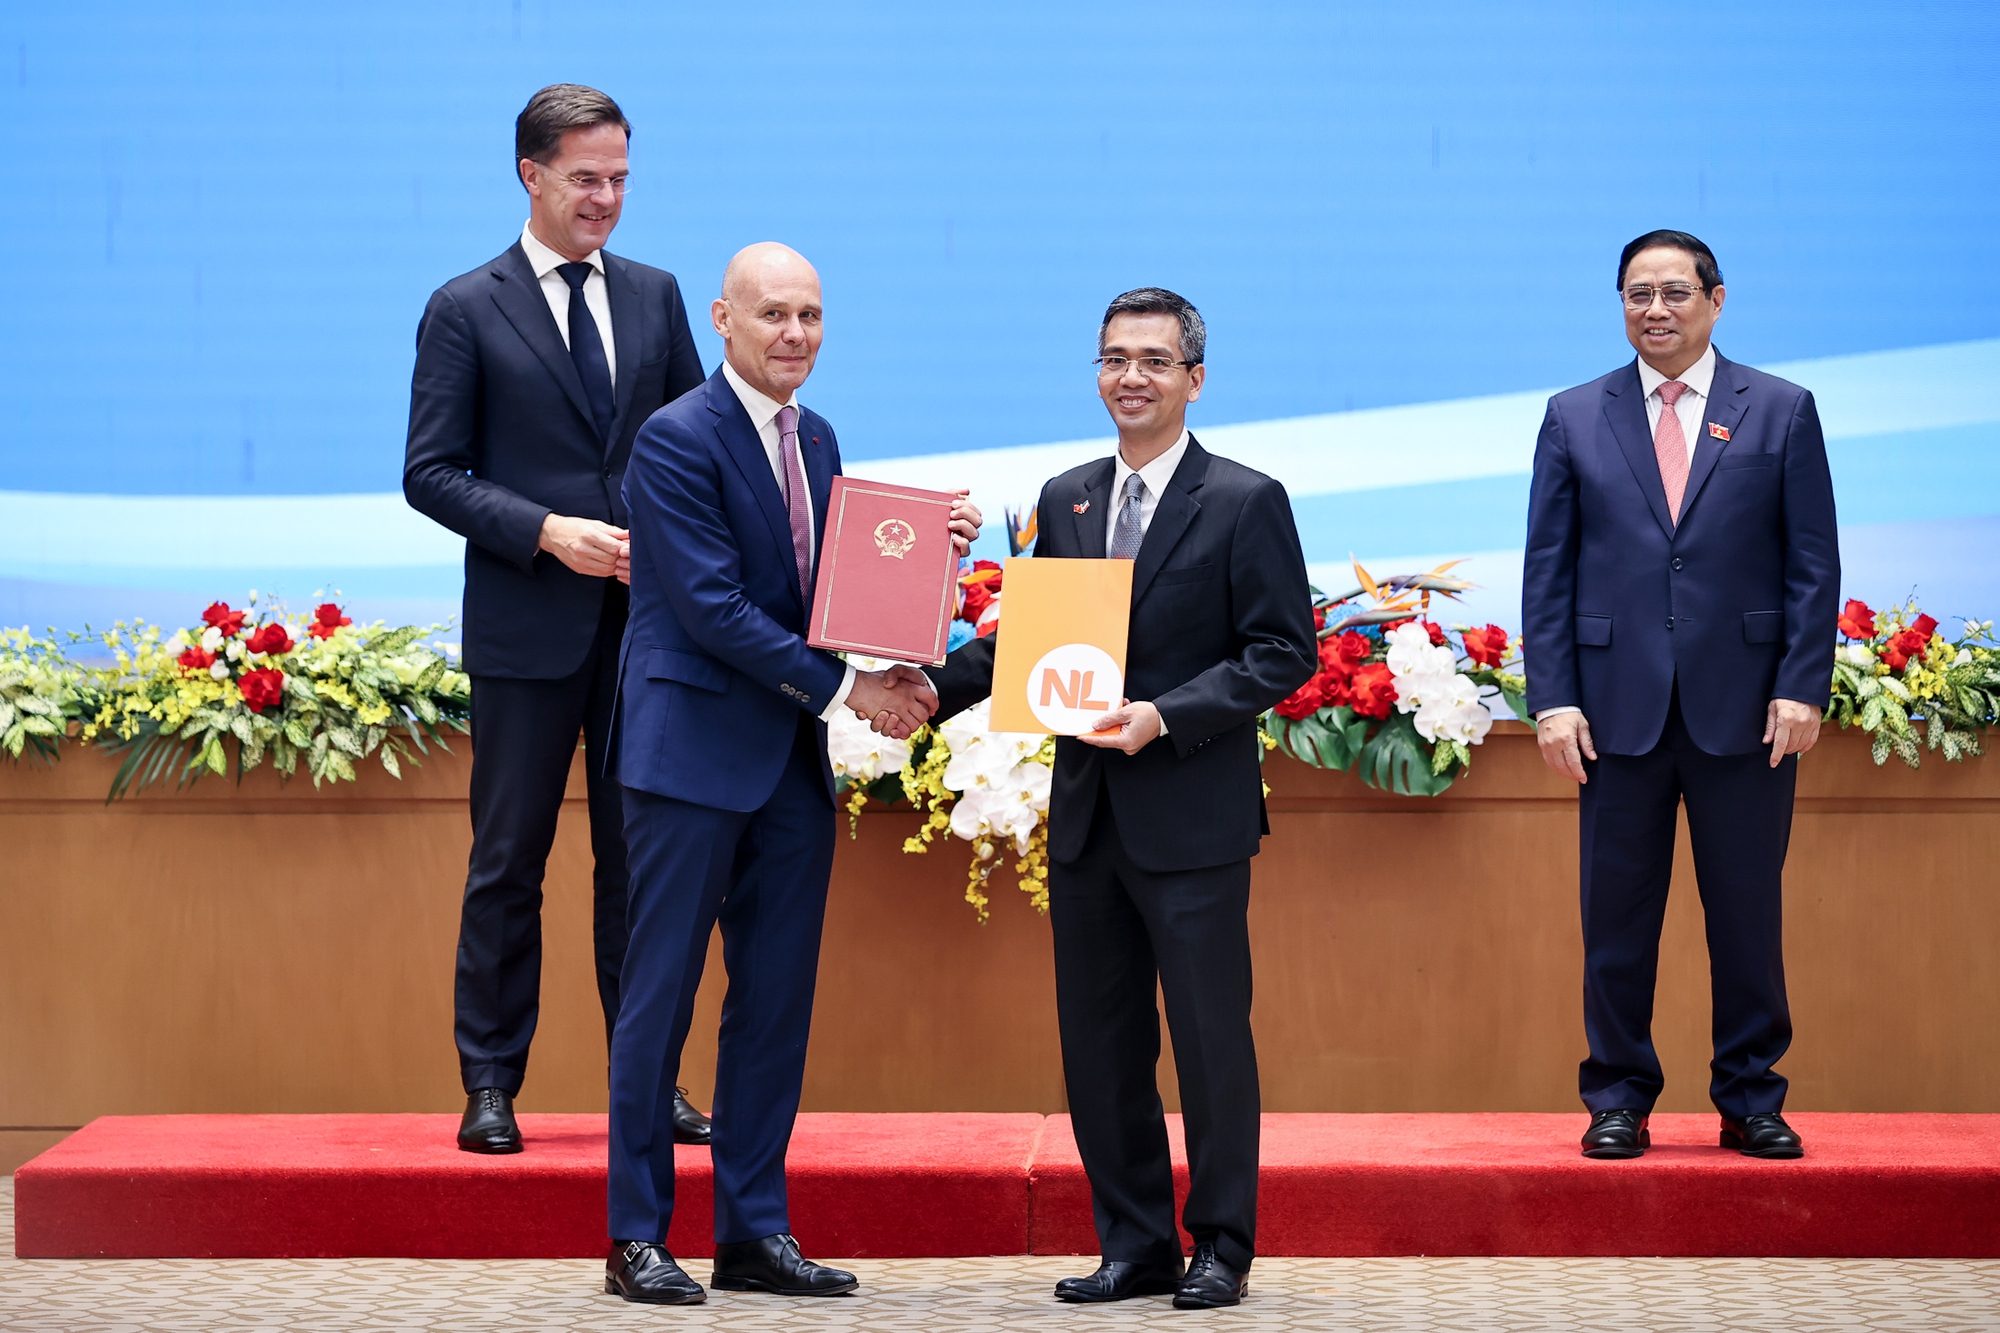 Thứ trưởng Bộ Tài chính Võ Thành Hưng và Đại sứ Hà Lan tại Việt Nam Kees van Baar trao đổi Thỏa thuận về việc thực hiện Hiệp định giữa Việt Nam và Hà Lan về hợp tác và hỗ trợ hành chính lẫn nhau trong lĩnh vực hải quan - Ảnh: VGP/Nhật Bắc